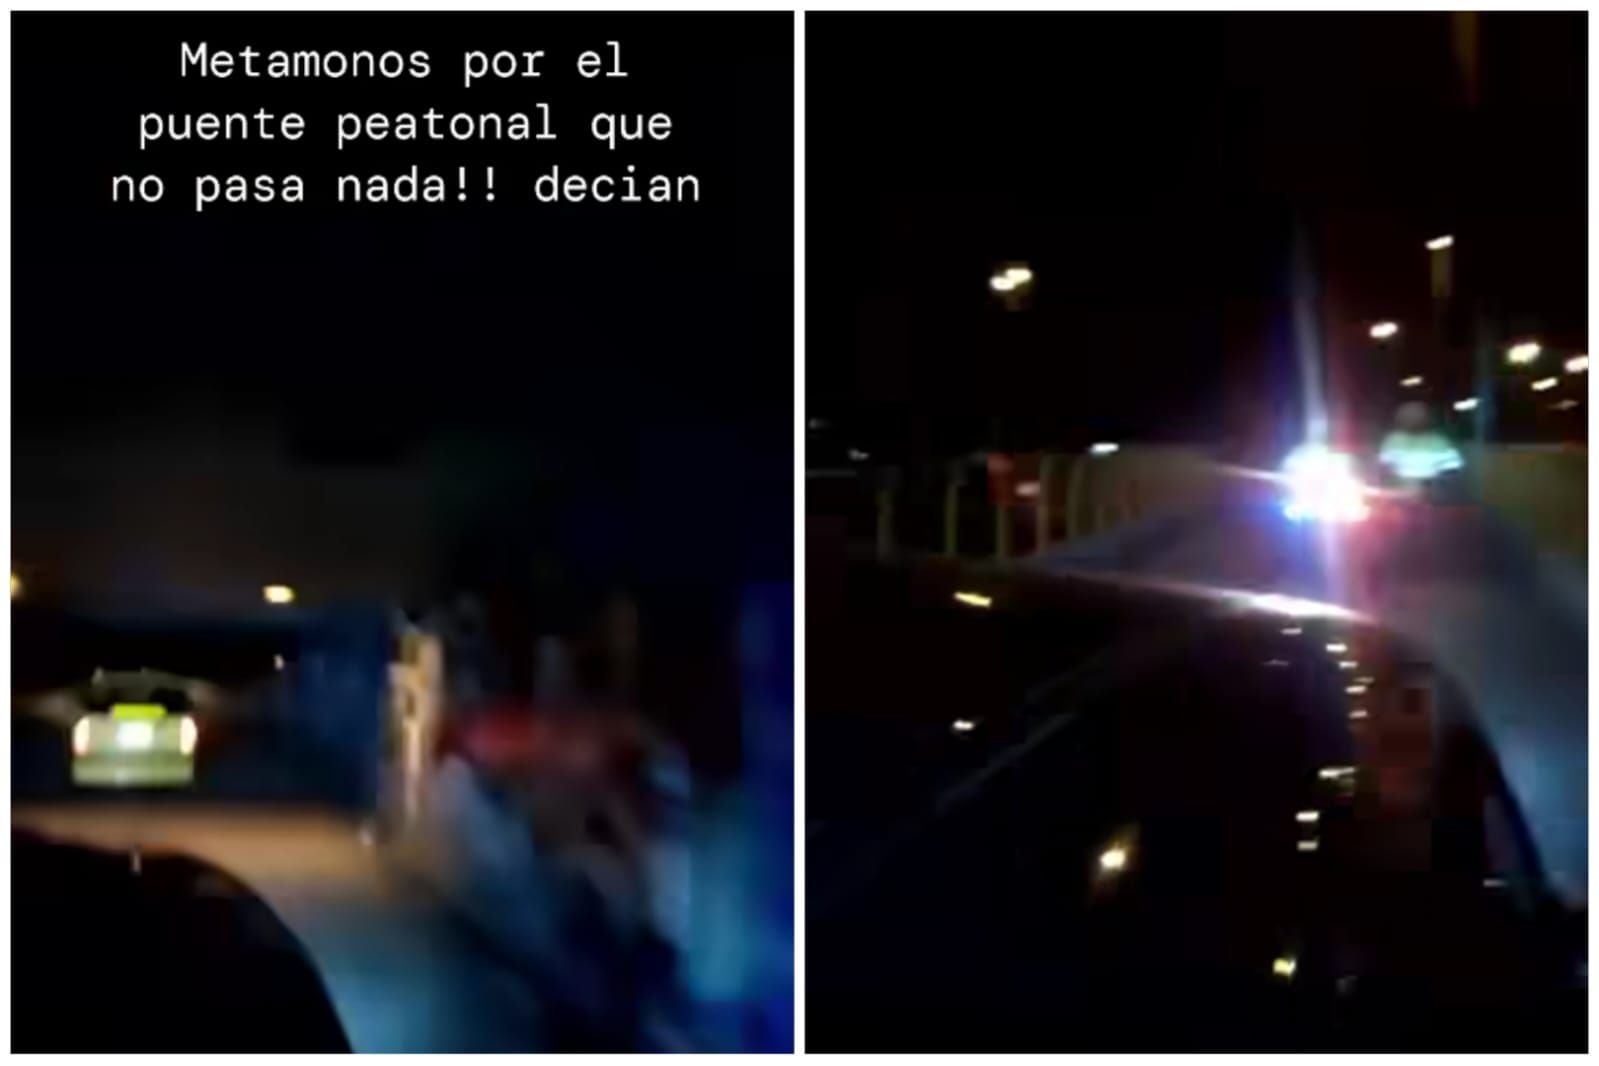 En un hecho que ha causado revuelo, un taxi y un vehículo privado fueron filmados cruzando el puente peatonal de Salitre, generando miles de reacciones - crédito @stevencabrerareal / Instagram